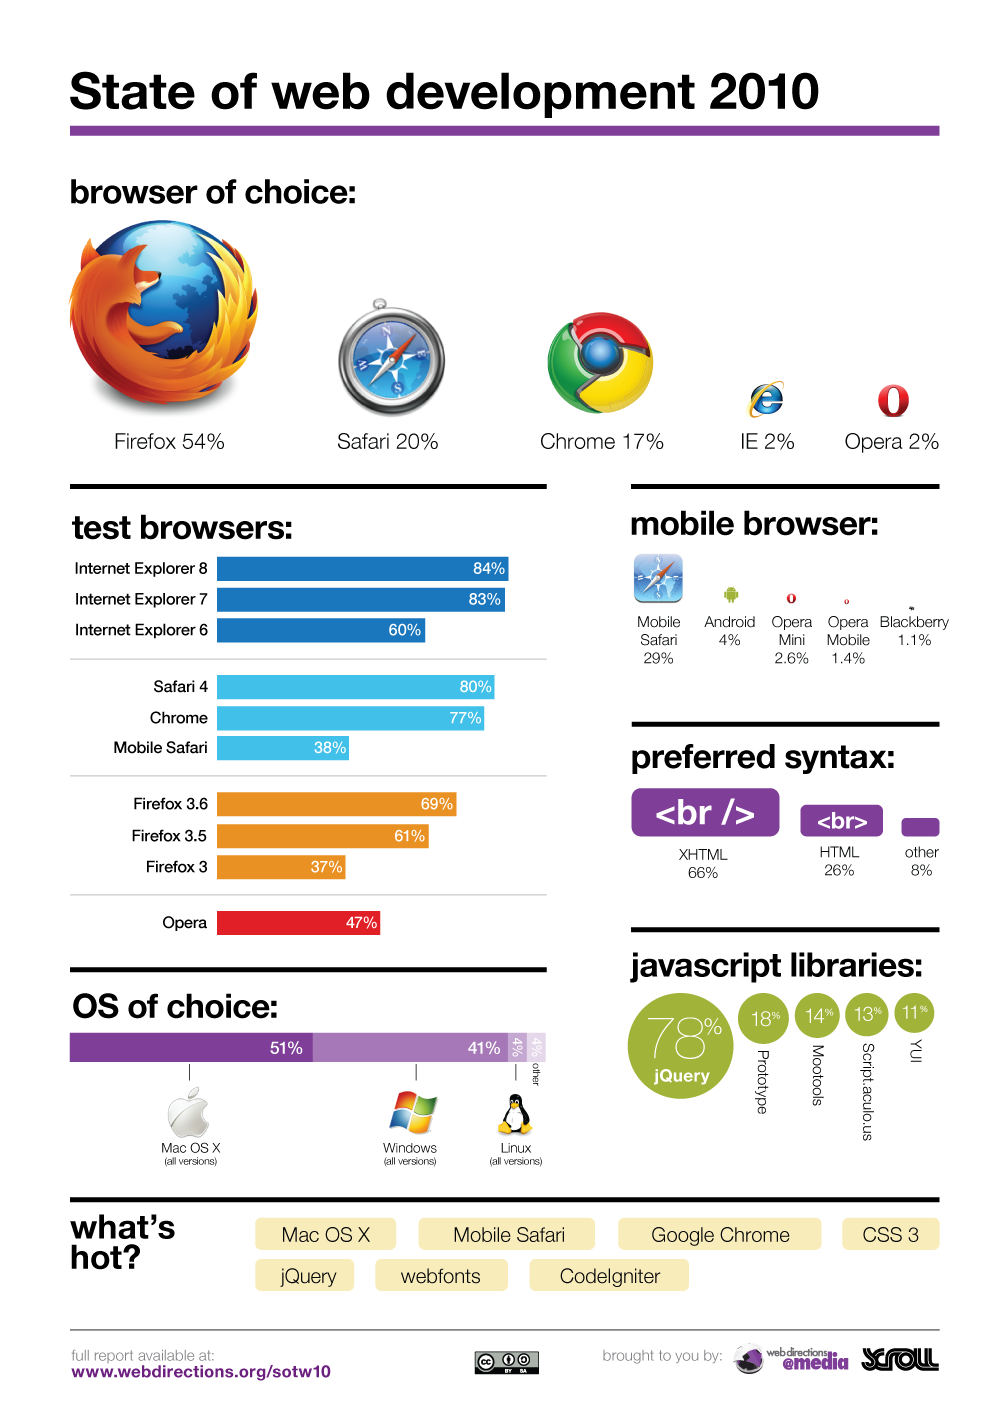 L’état du développement web en 2010 vu par les développeurs et les designers